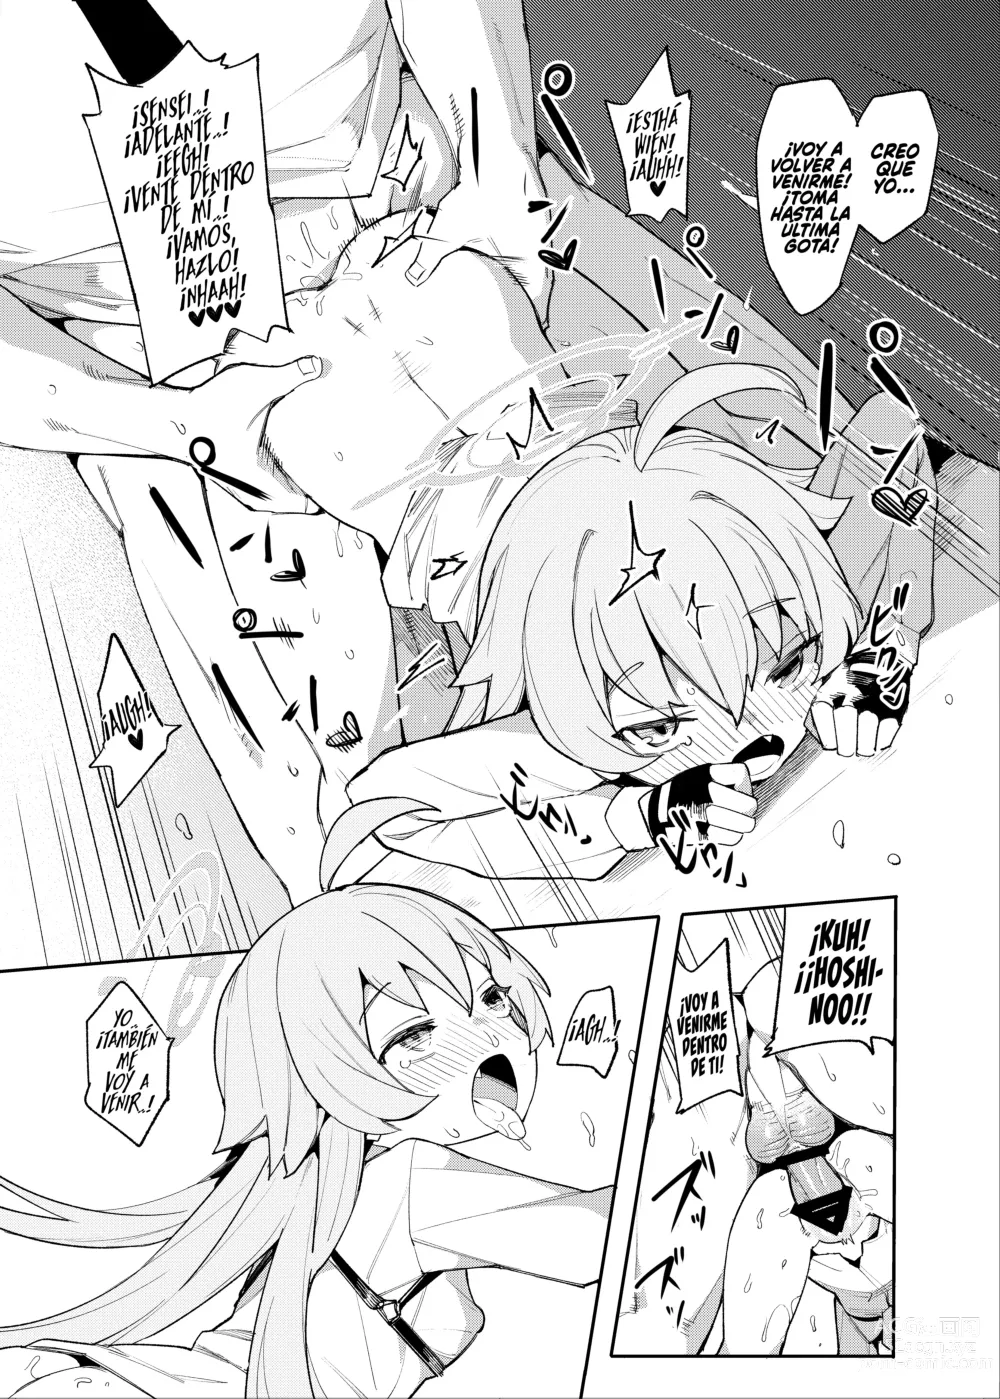 Page 15 of doujinshi ¡Hoshino También Quiere que la Mimen!